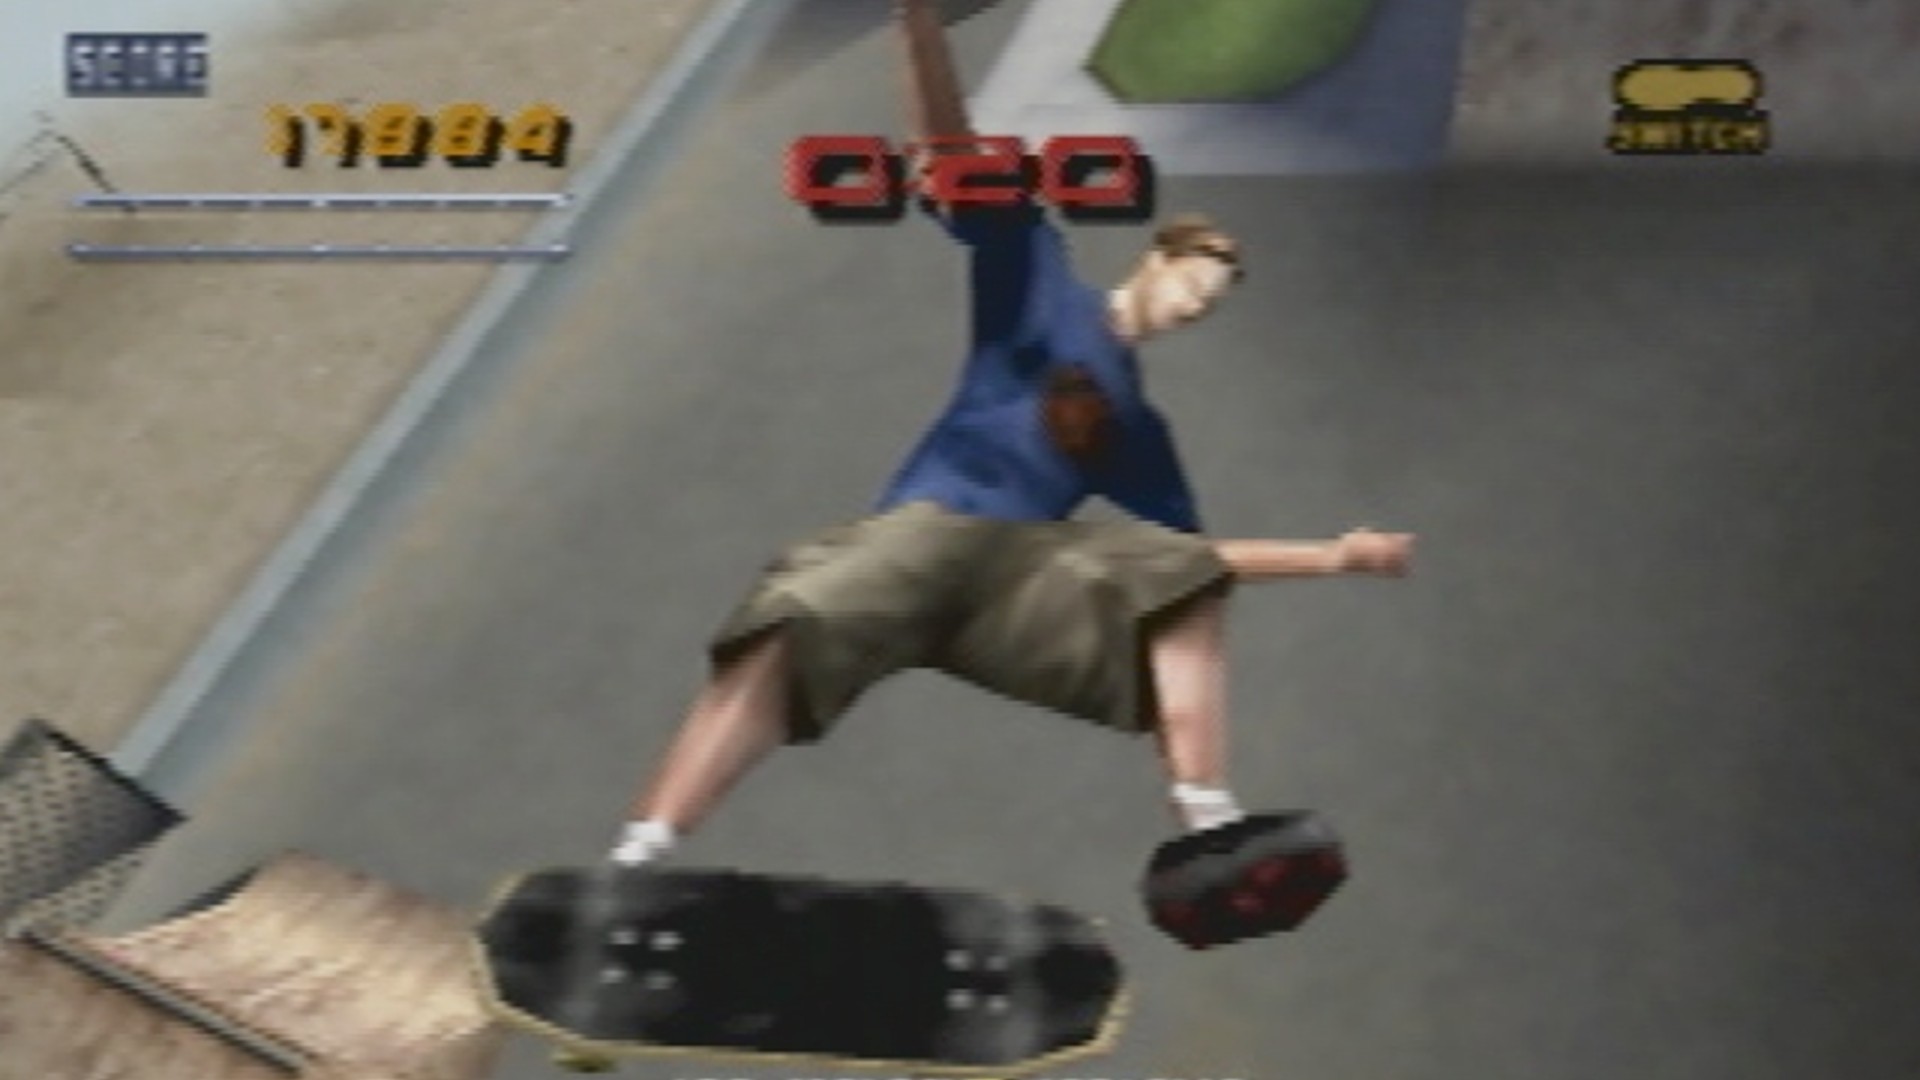 Tony Hawk's Pro Skater 2 2001